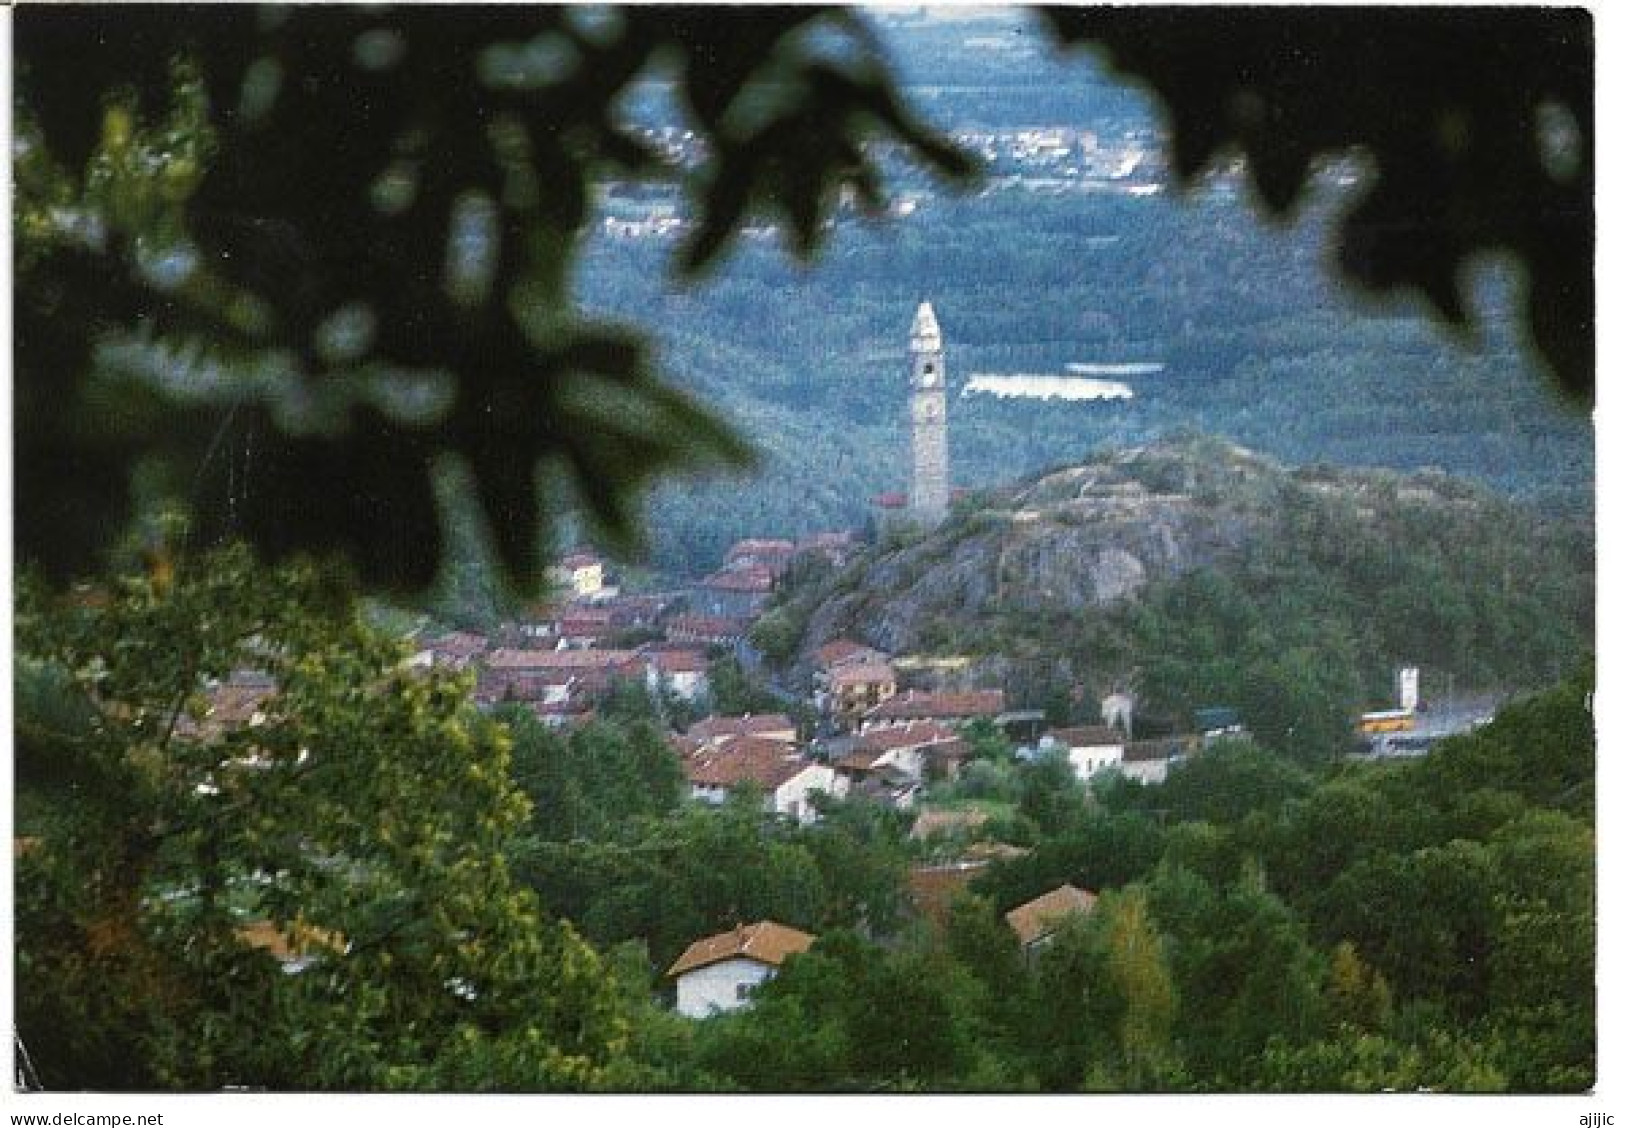 Chiaverano (City Of Torino) Postcard - Panoramic Views